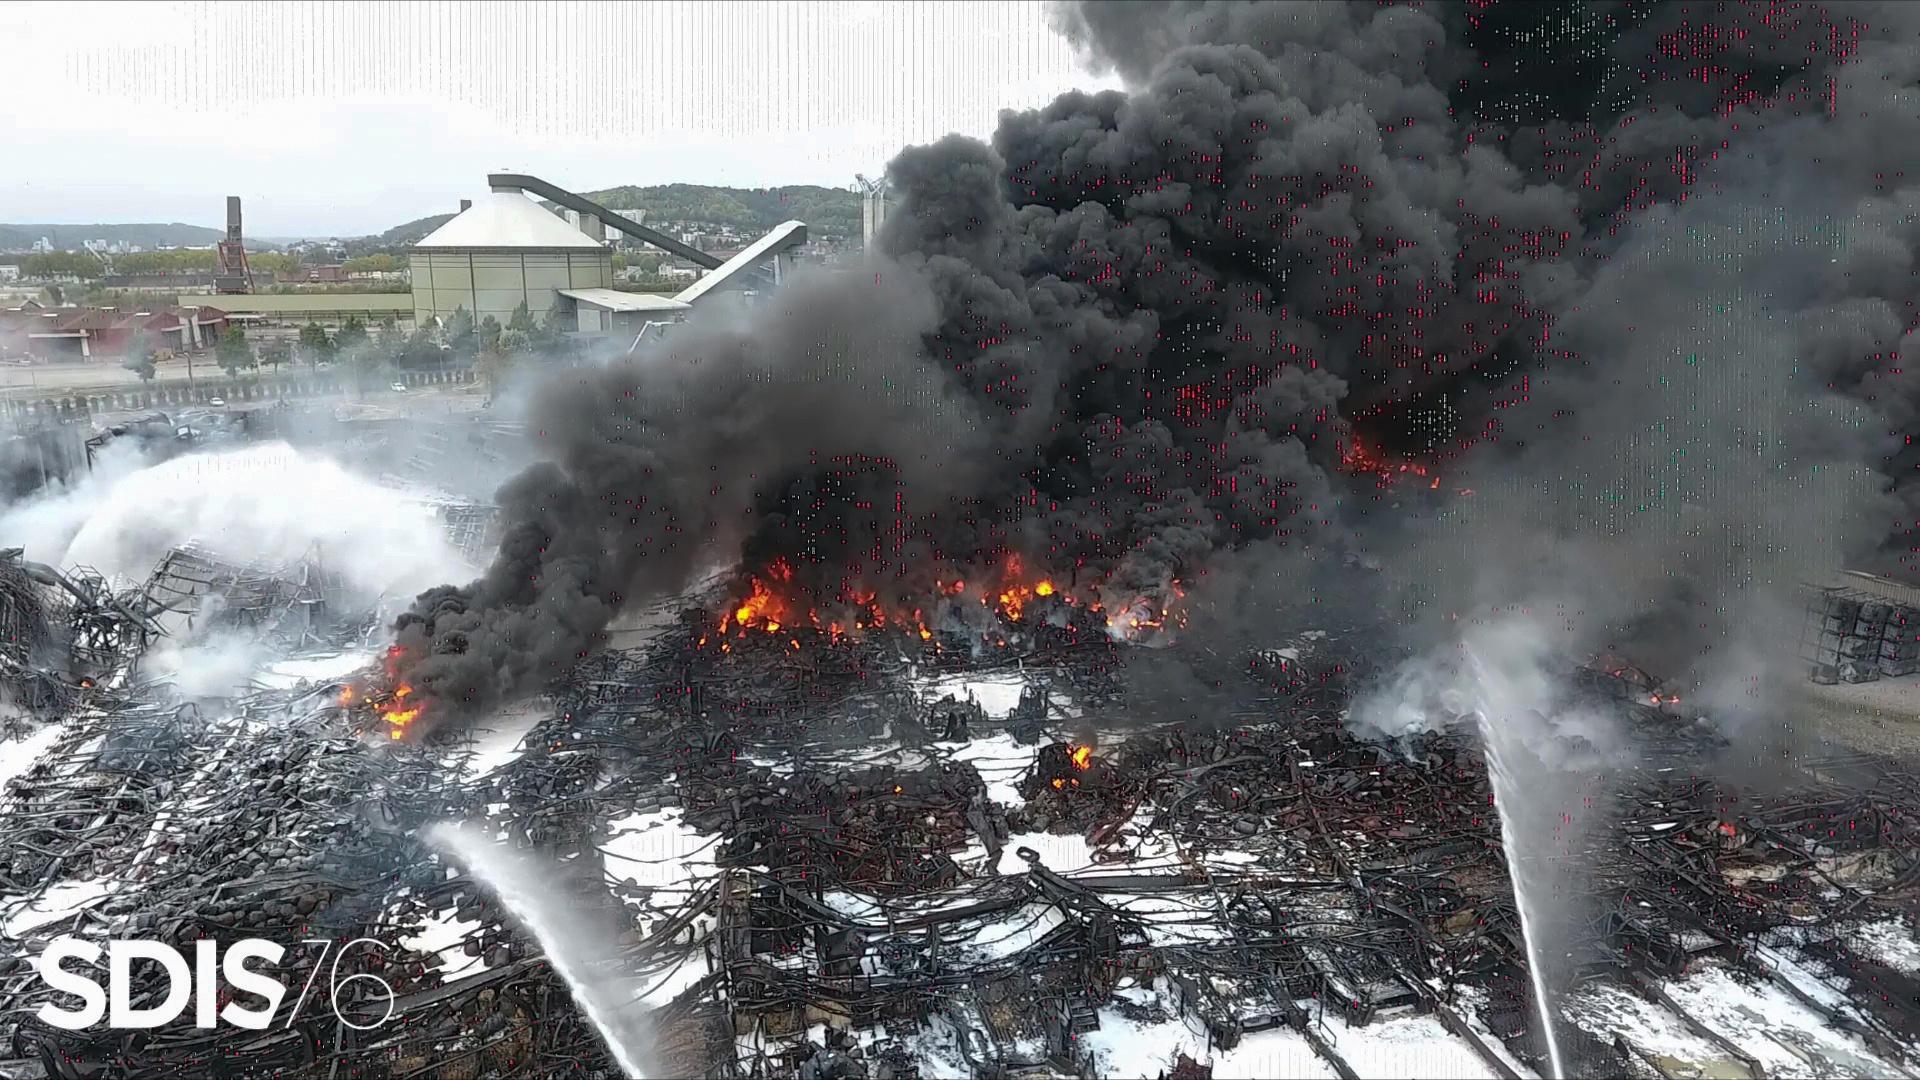 À Rouen, les inquiétudes demeurent alors que l'incendie de l'usine chimique est éteint